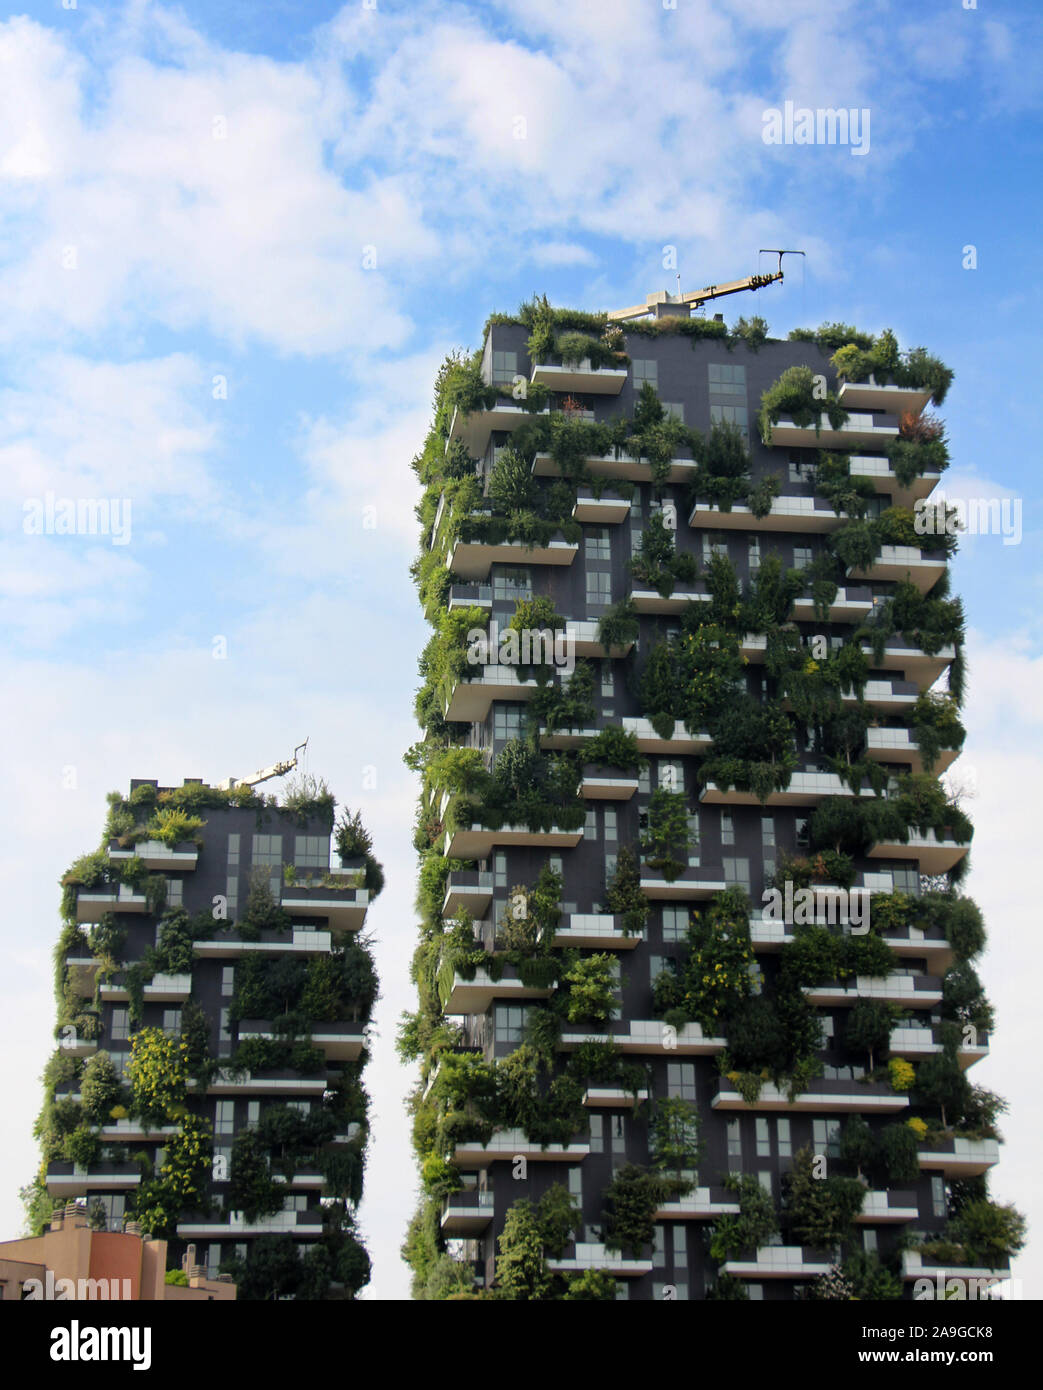 Mailand, Italien - 27. Juni 2017: Wohngebäude Bosco Verticale. Vertikale Wald Wohntürme im Geschäftsviertel von Mailand, Italien Stockfoto